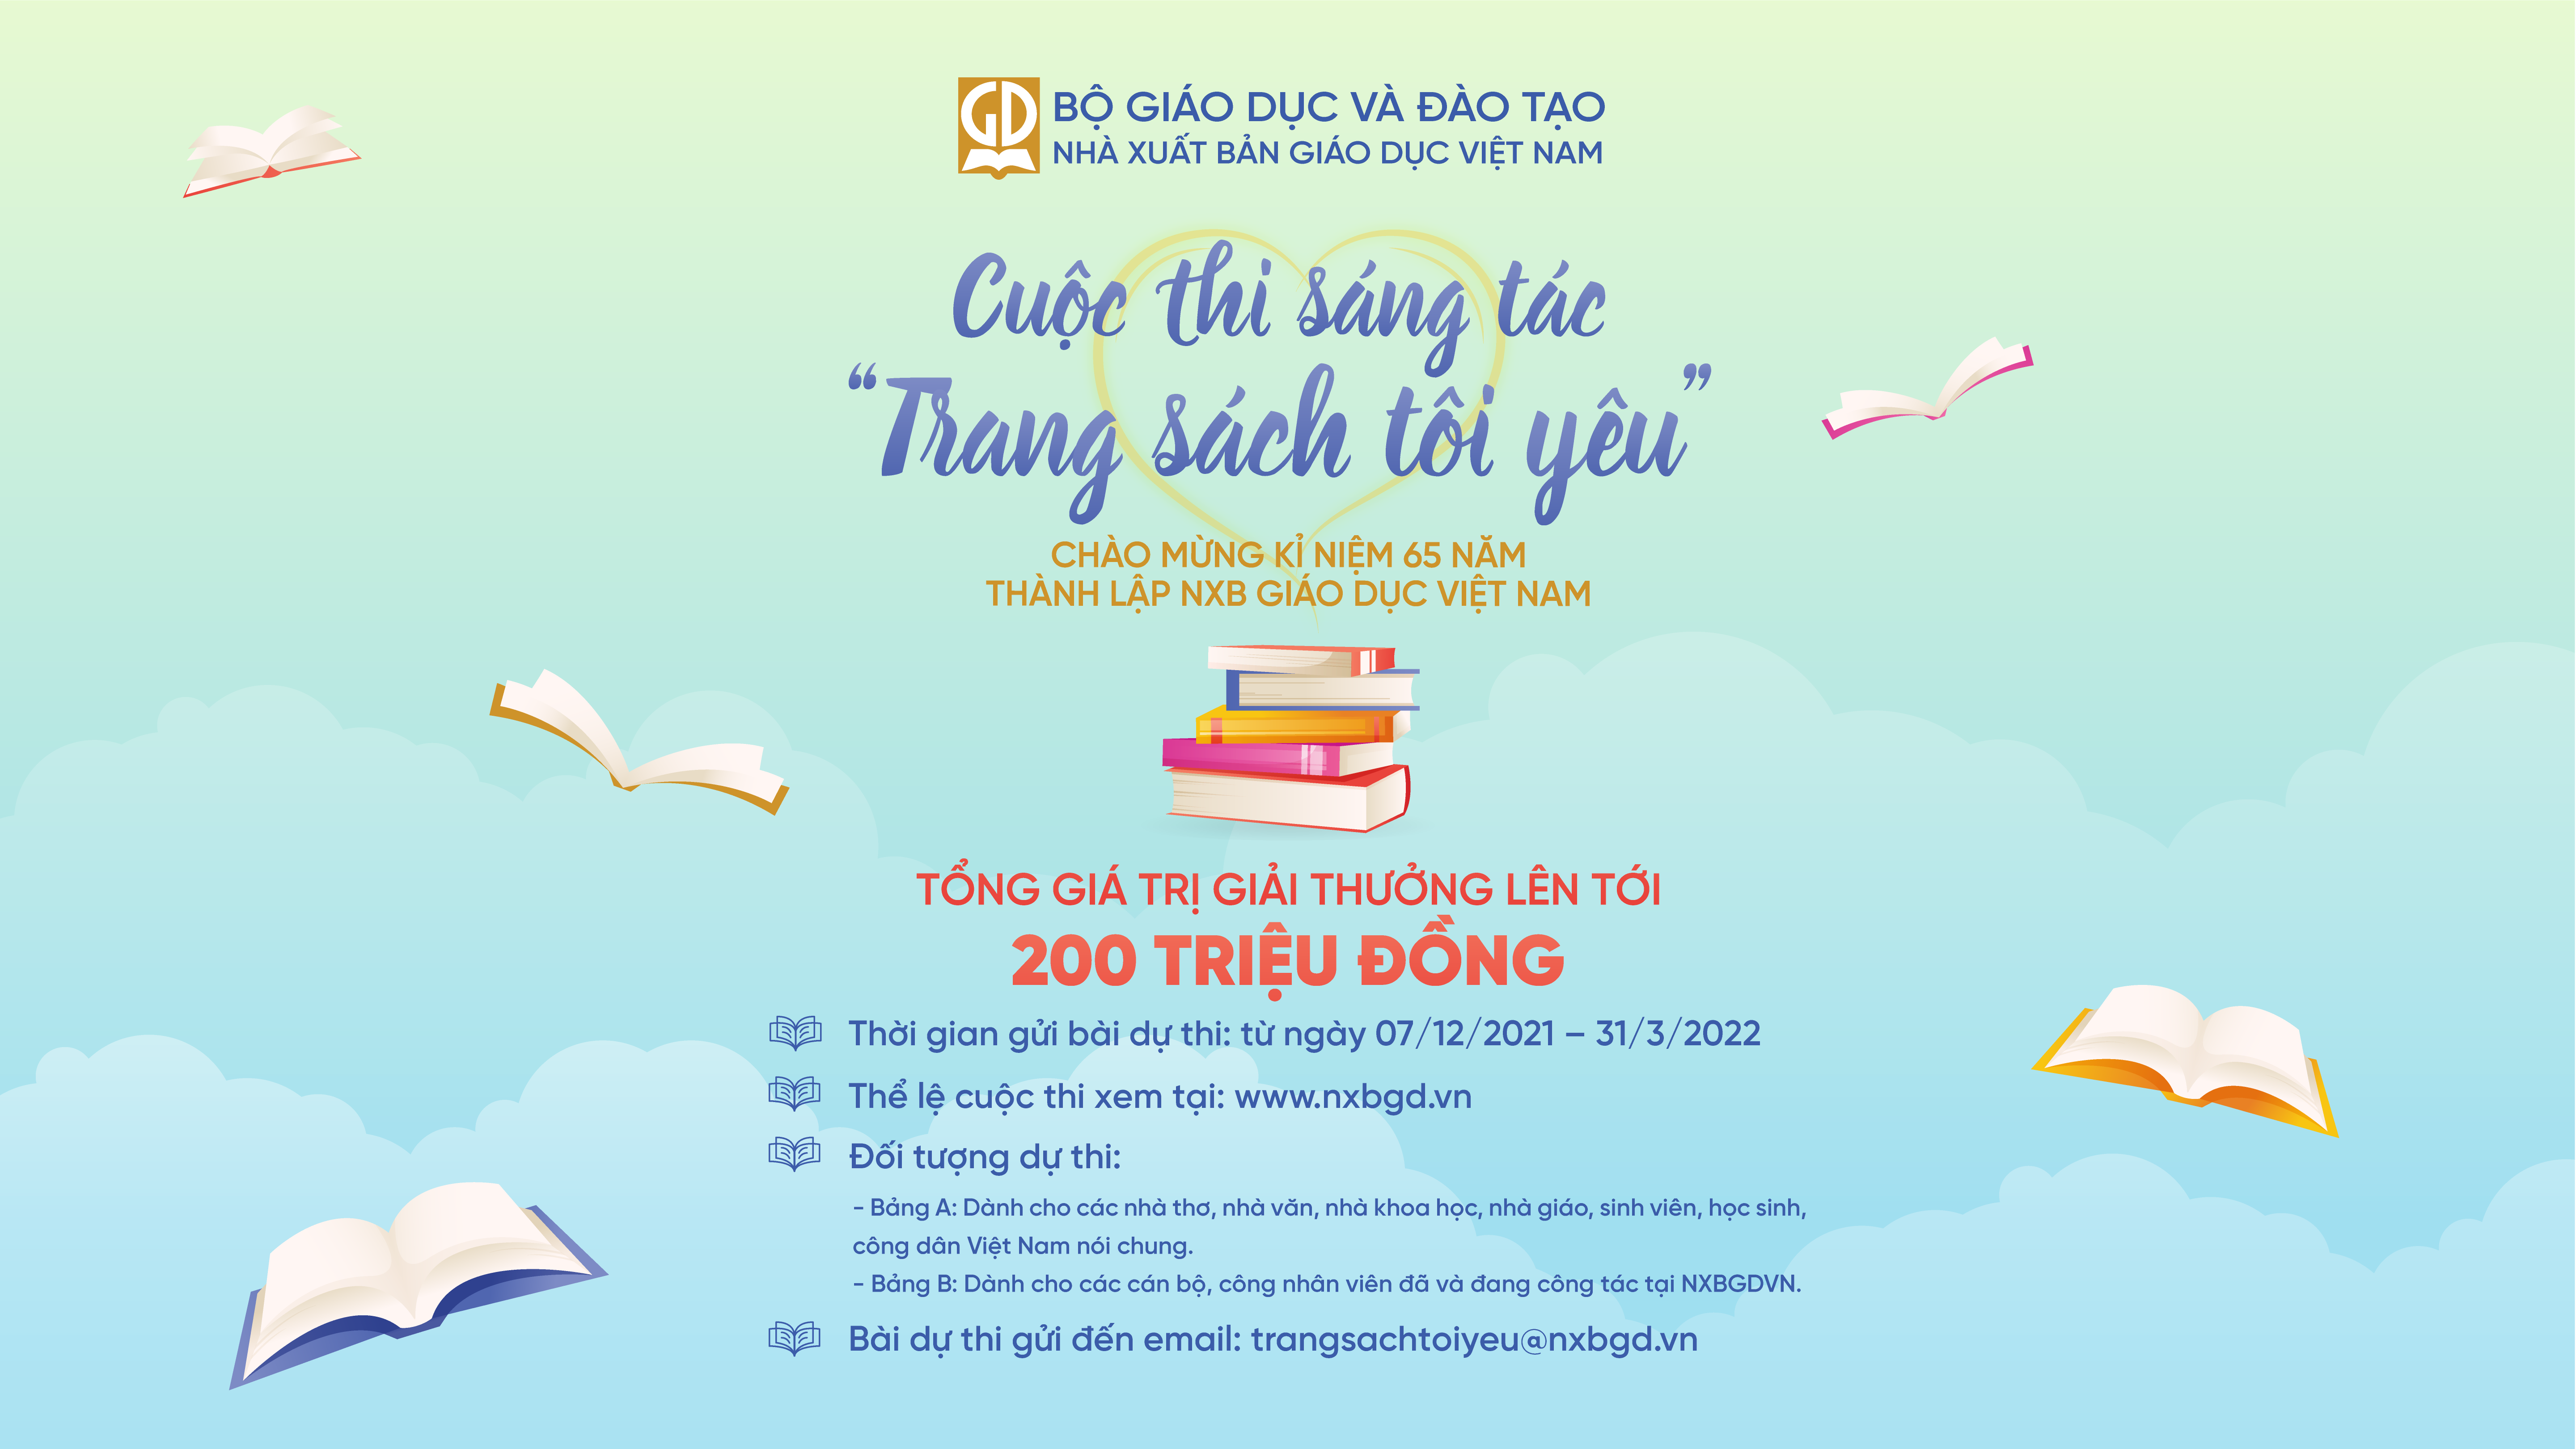 Thể lệ cuộc thi sáng tác “TRANG SÁCH TÔI YÊU” chào mừng kỷ niệm 65 năm ngày thành lập NXB Giáo dục Việt Nam